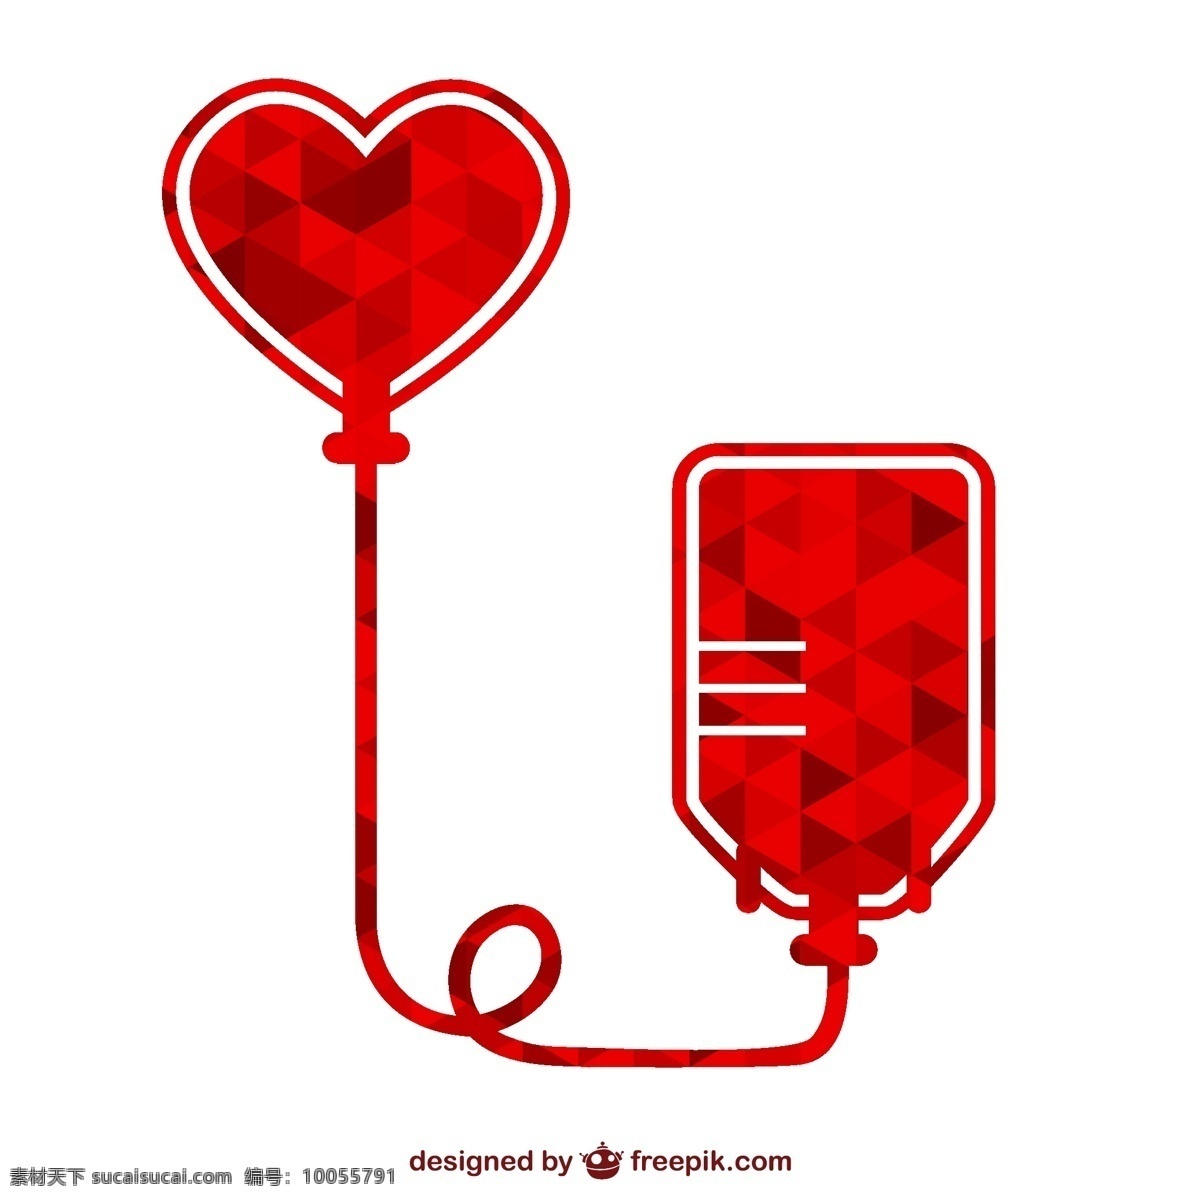 创意 献血 标志 矢量 献血袋 爱心 公益 矢量图